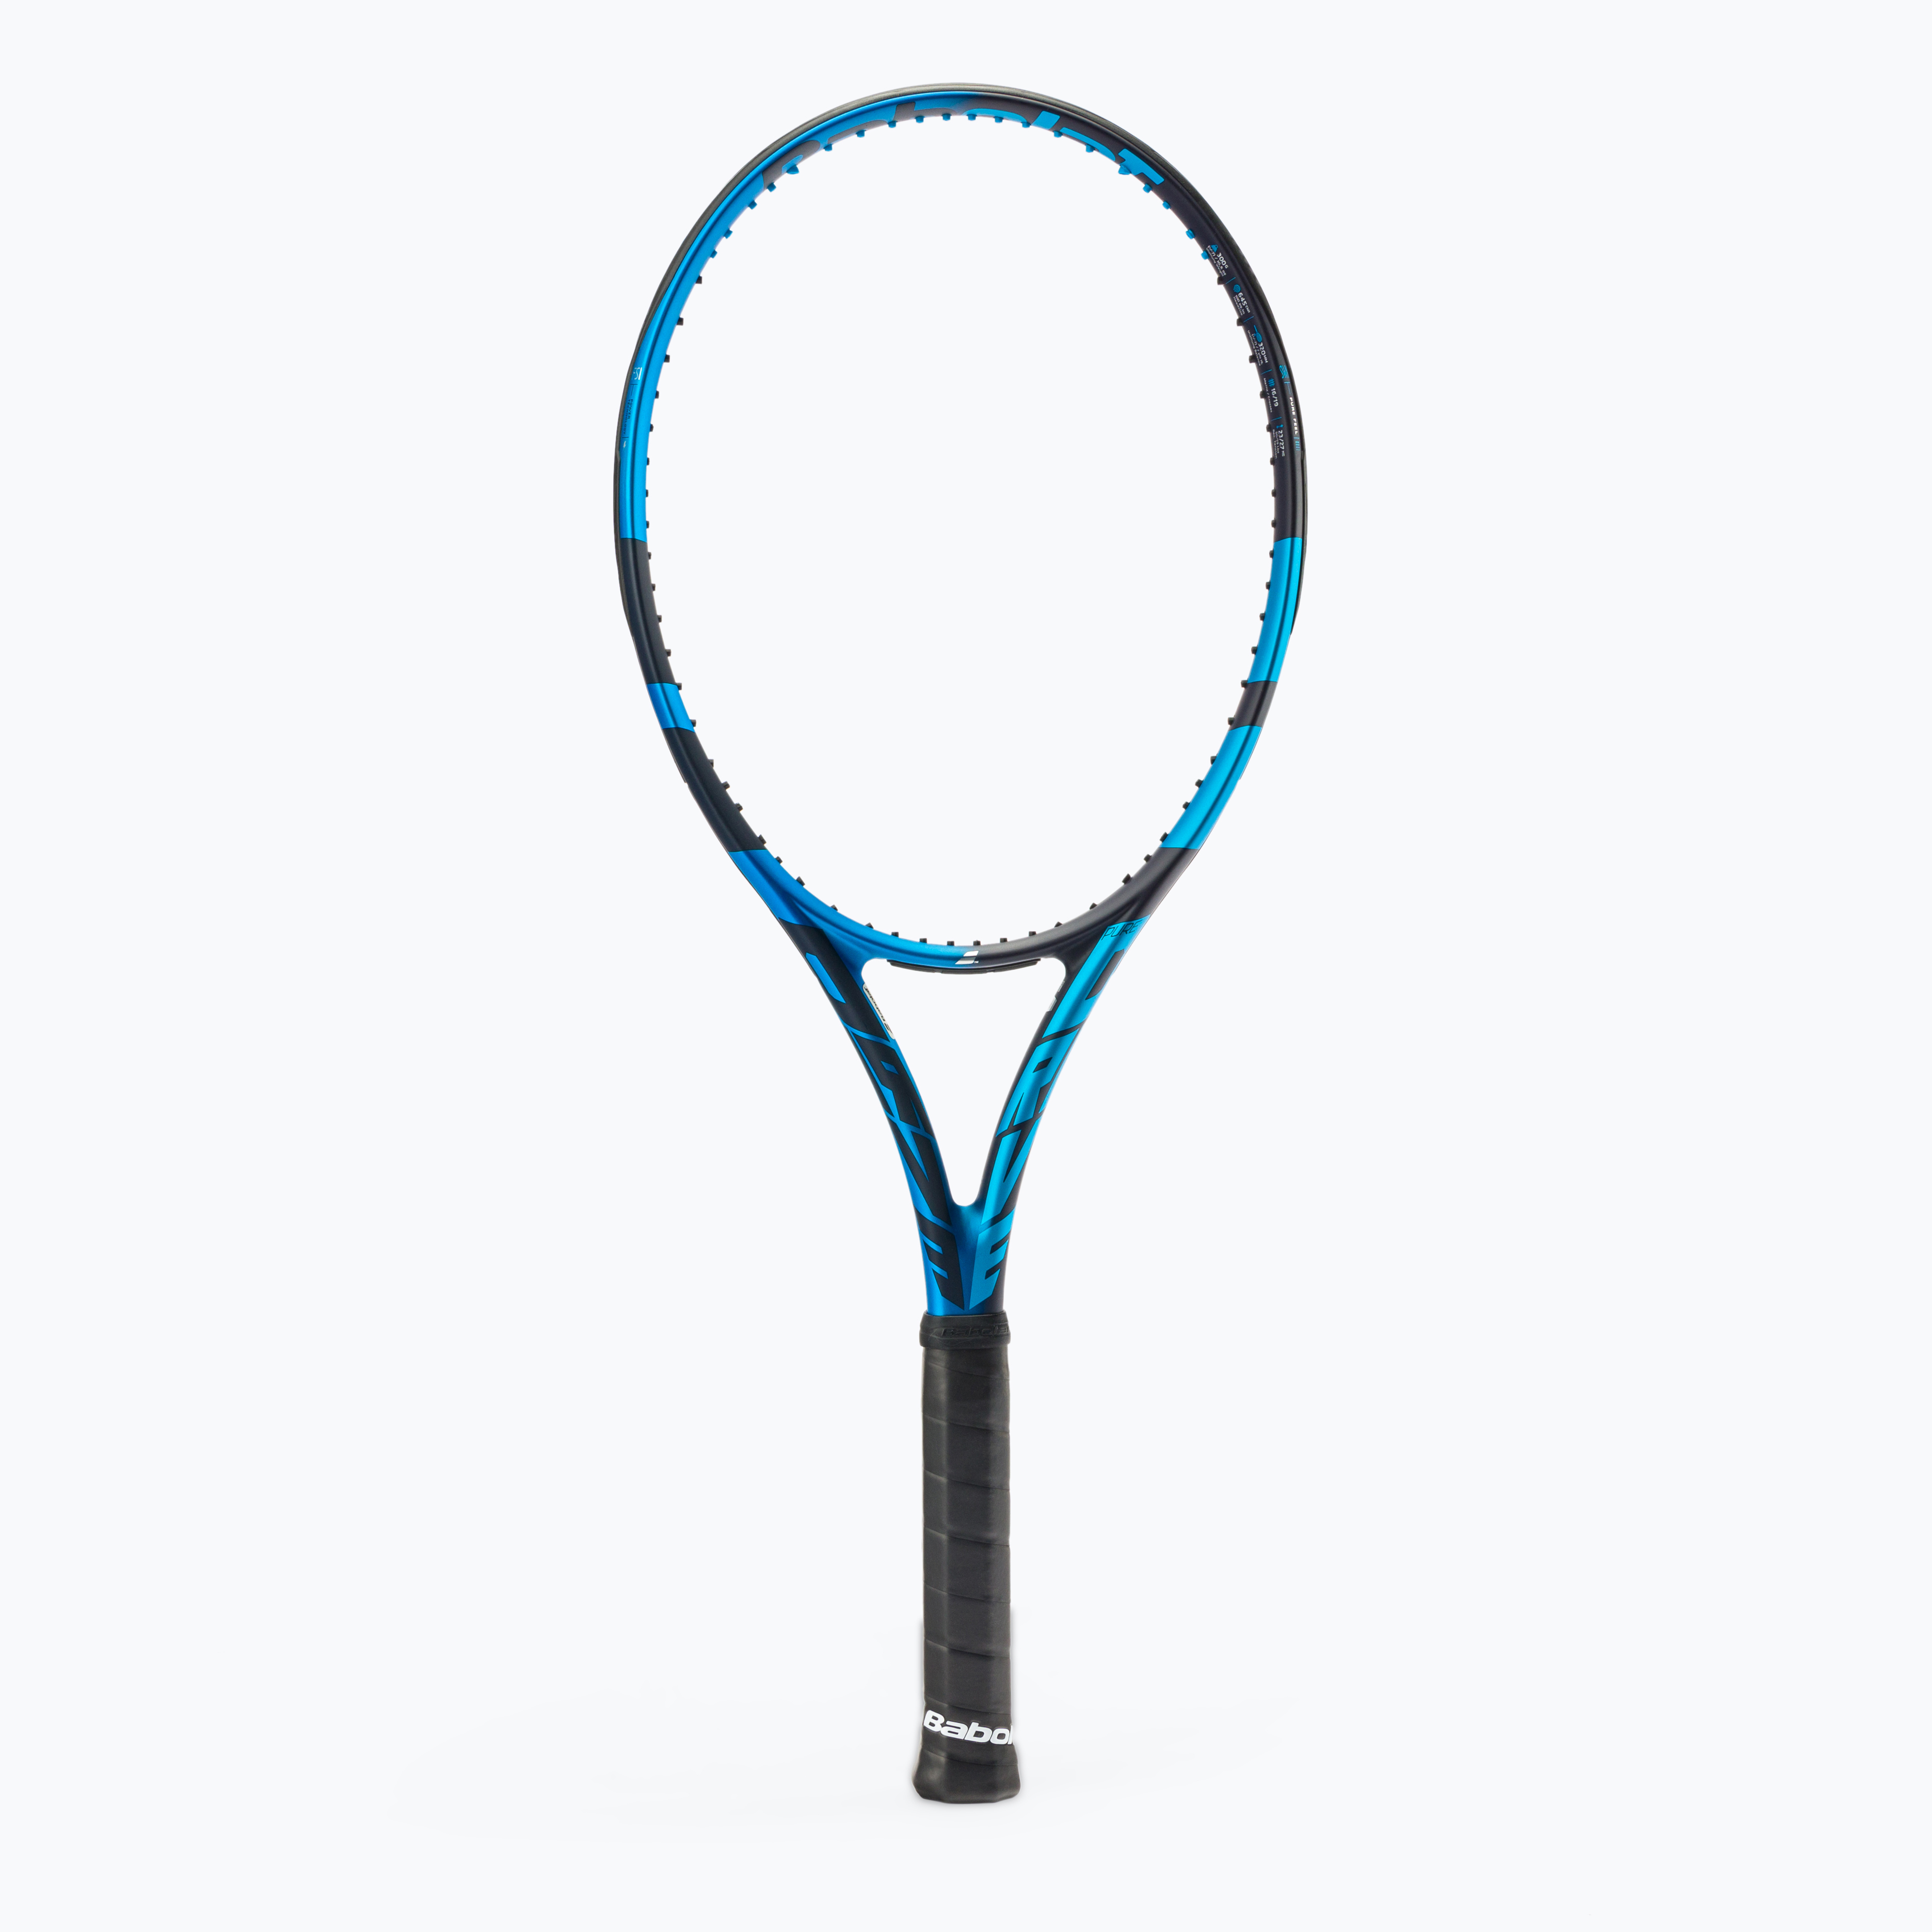 Rachetă de tenis BABOLAT Pure Drive, albastru, 101435